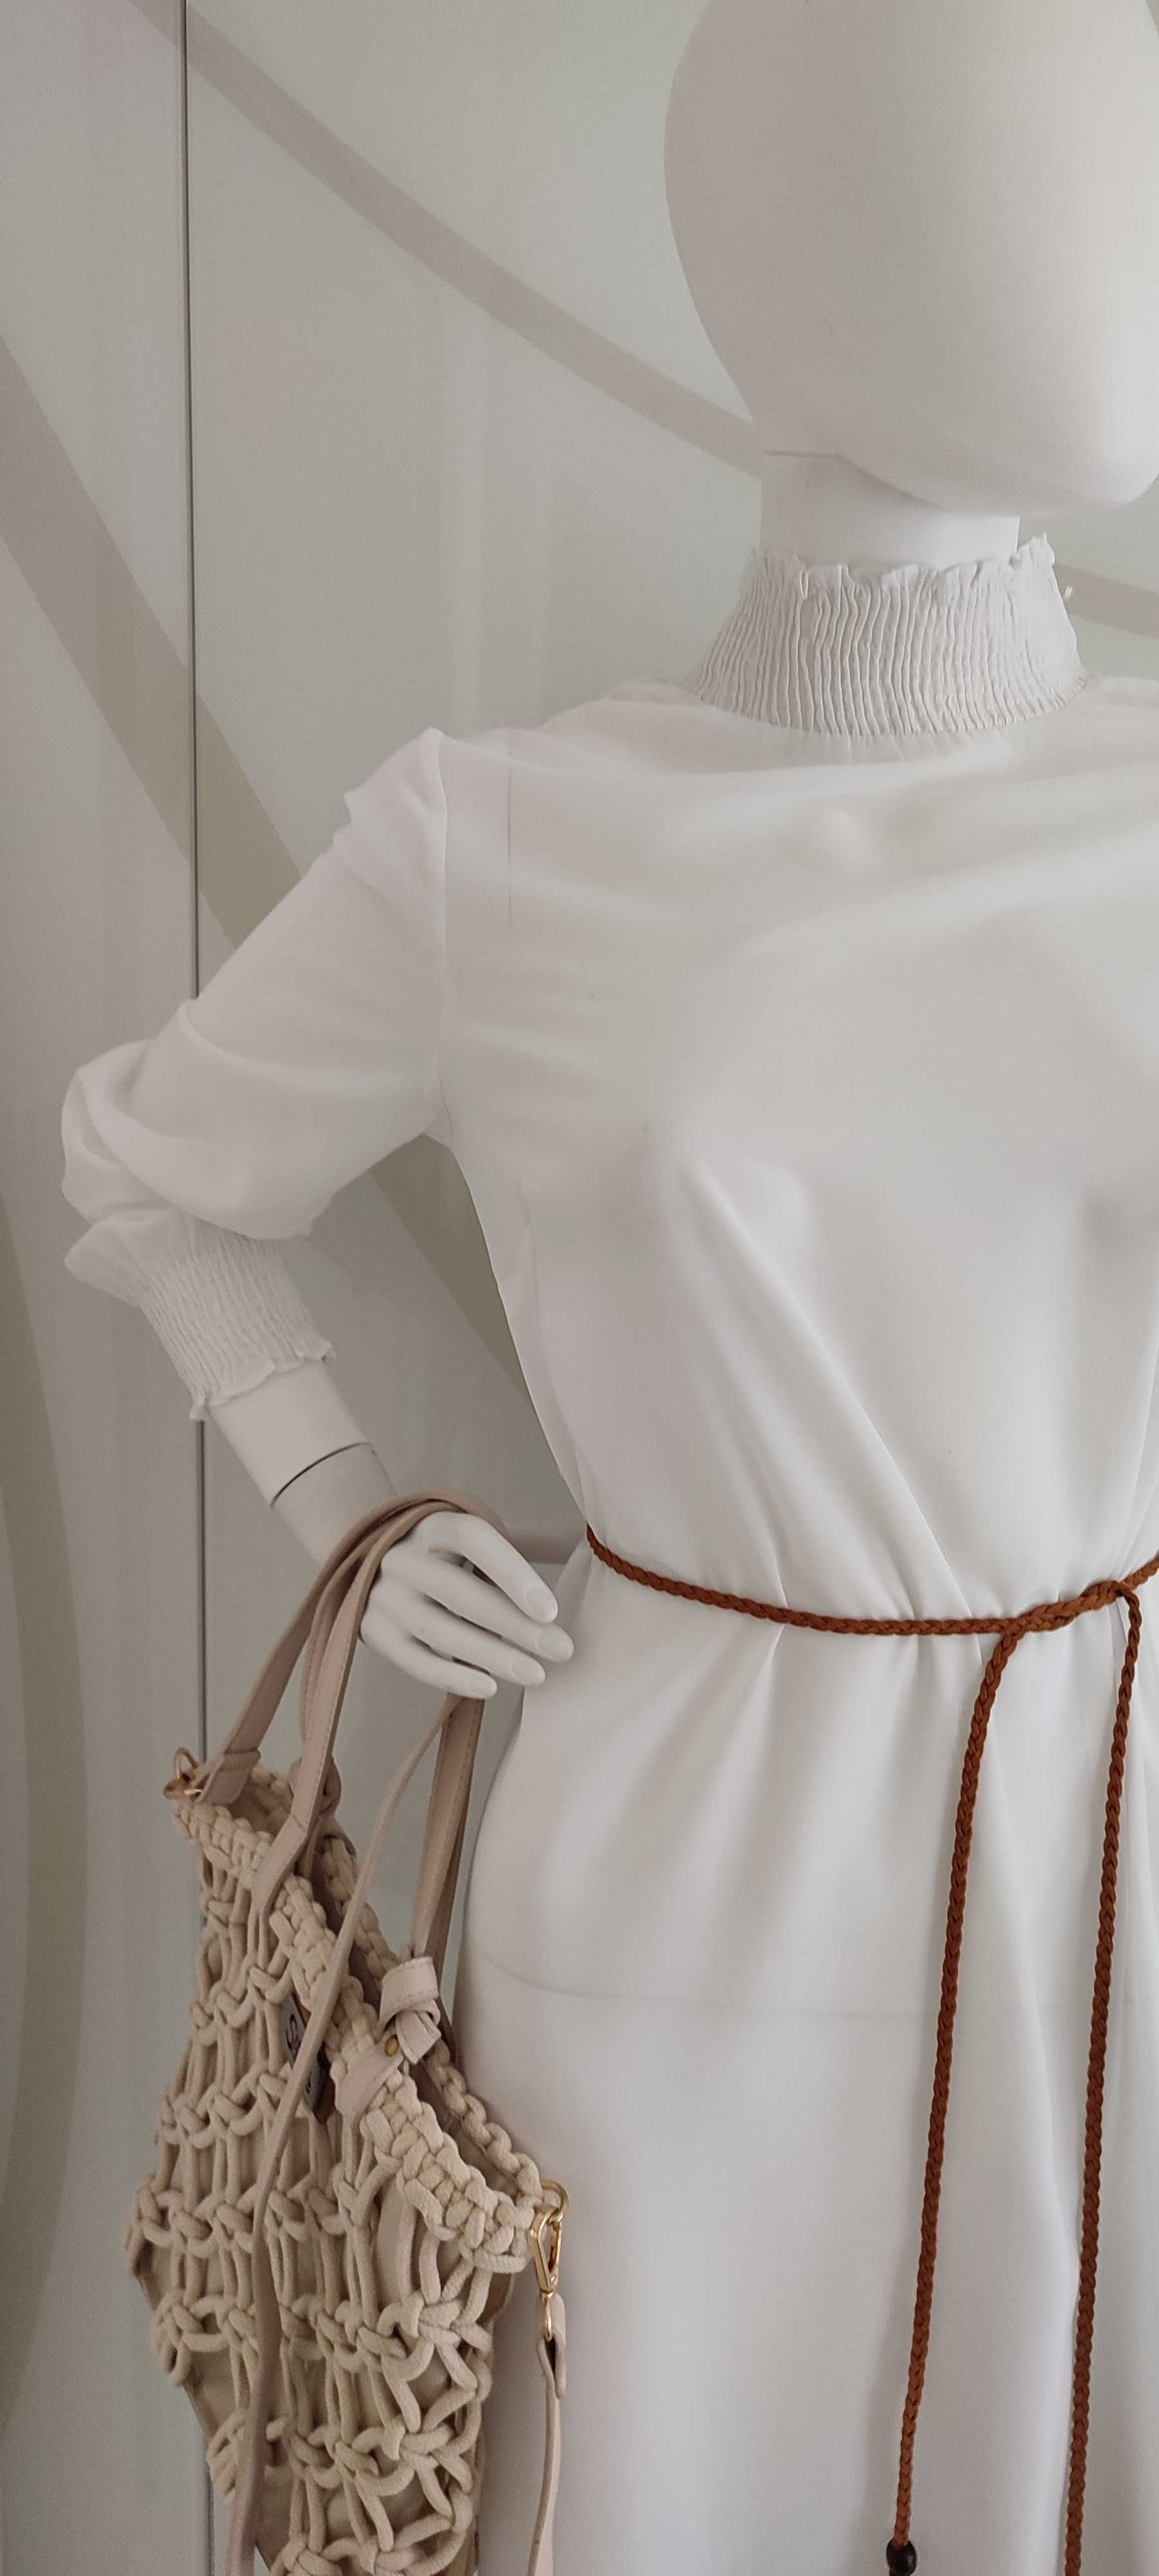 Biała sukienka długa